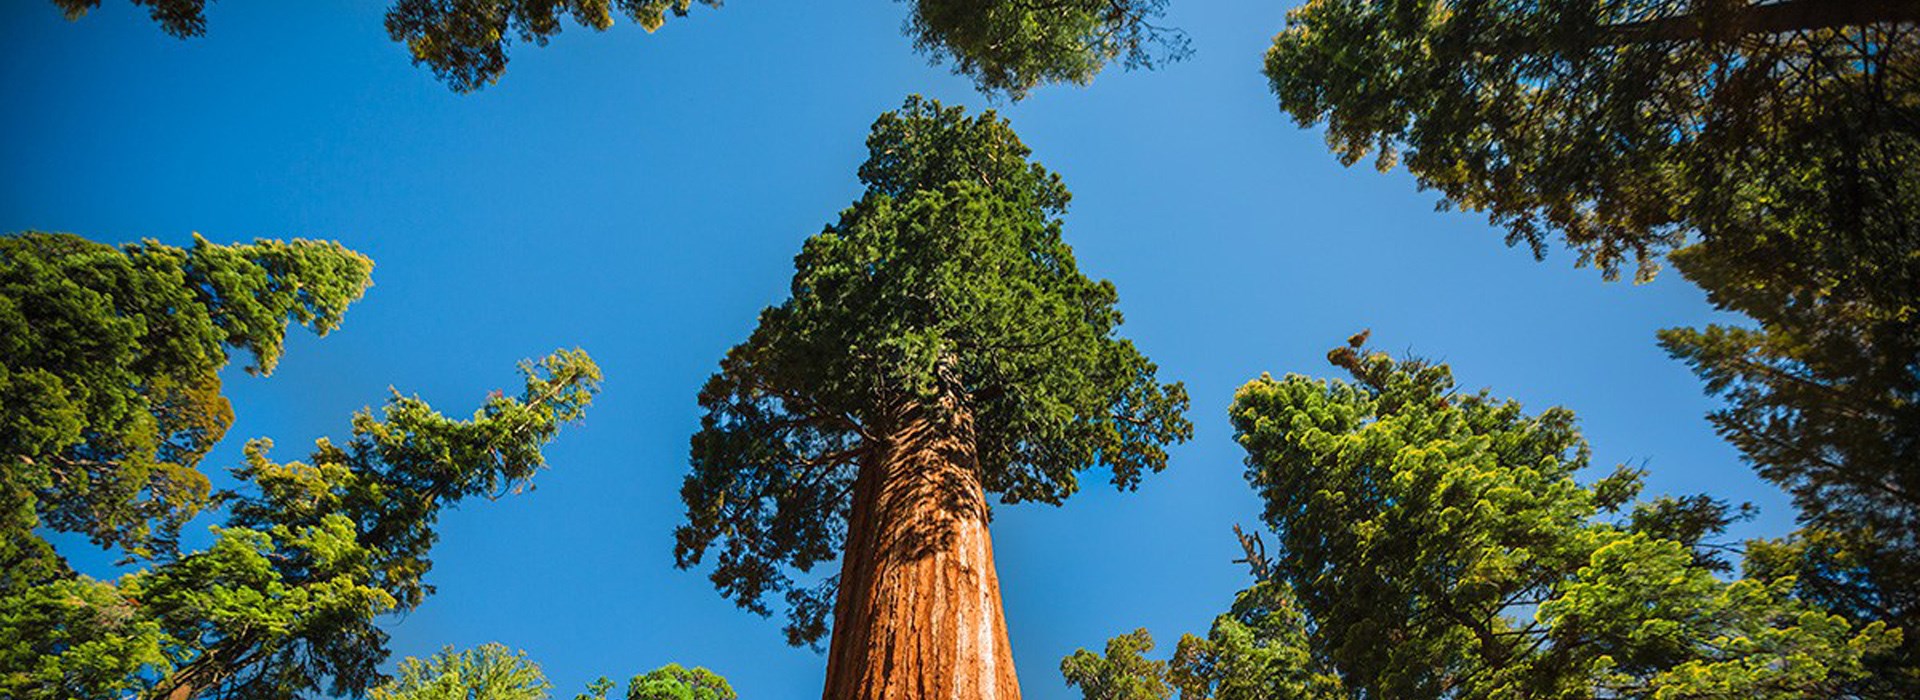 Visiter Le parc national de Sequoia - Etats-Unis